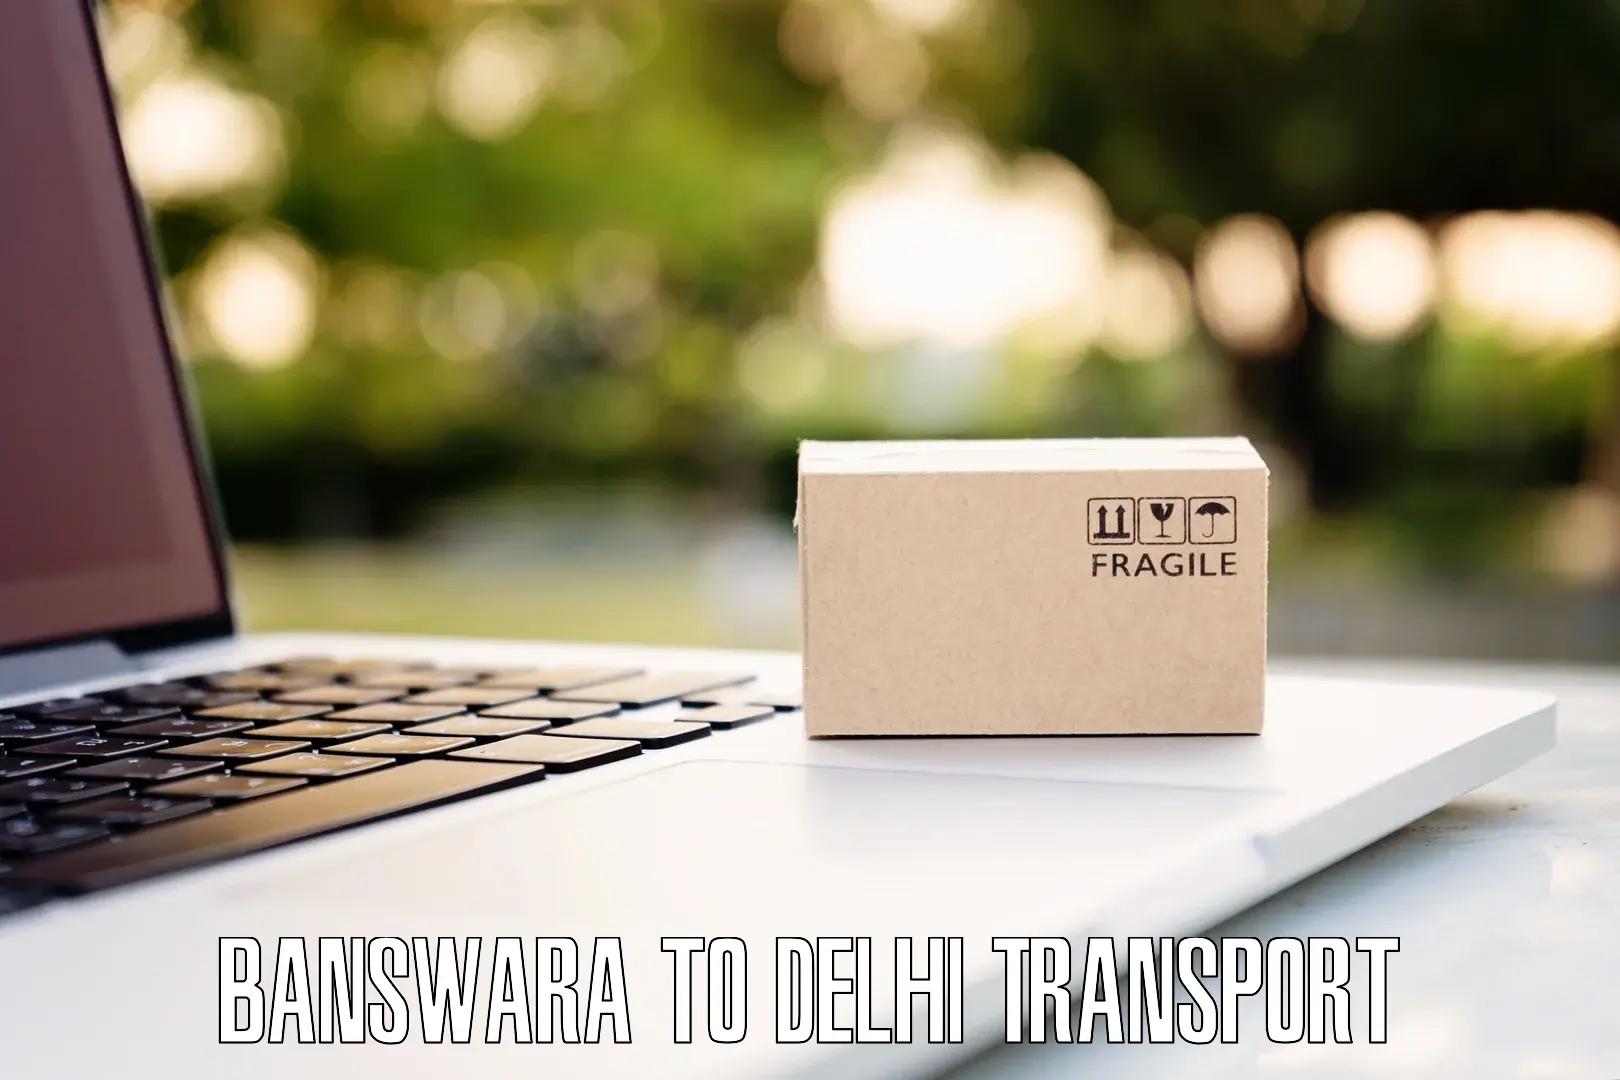 Sending bike to another city Banswara to Jamia Millia Islamia New Delhi